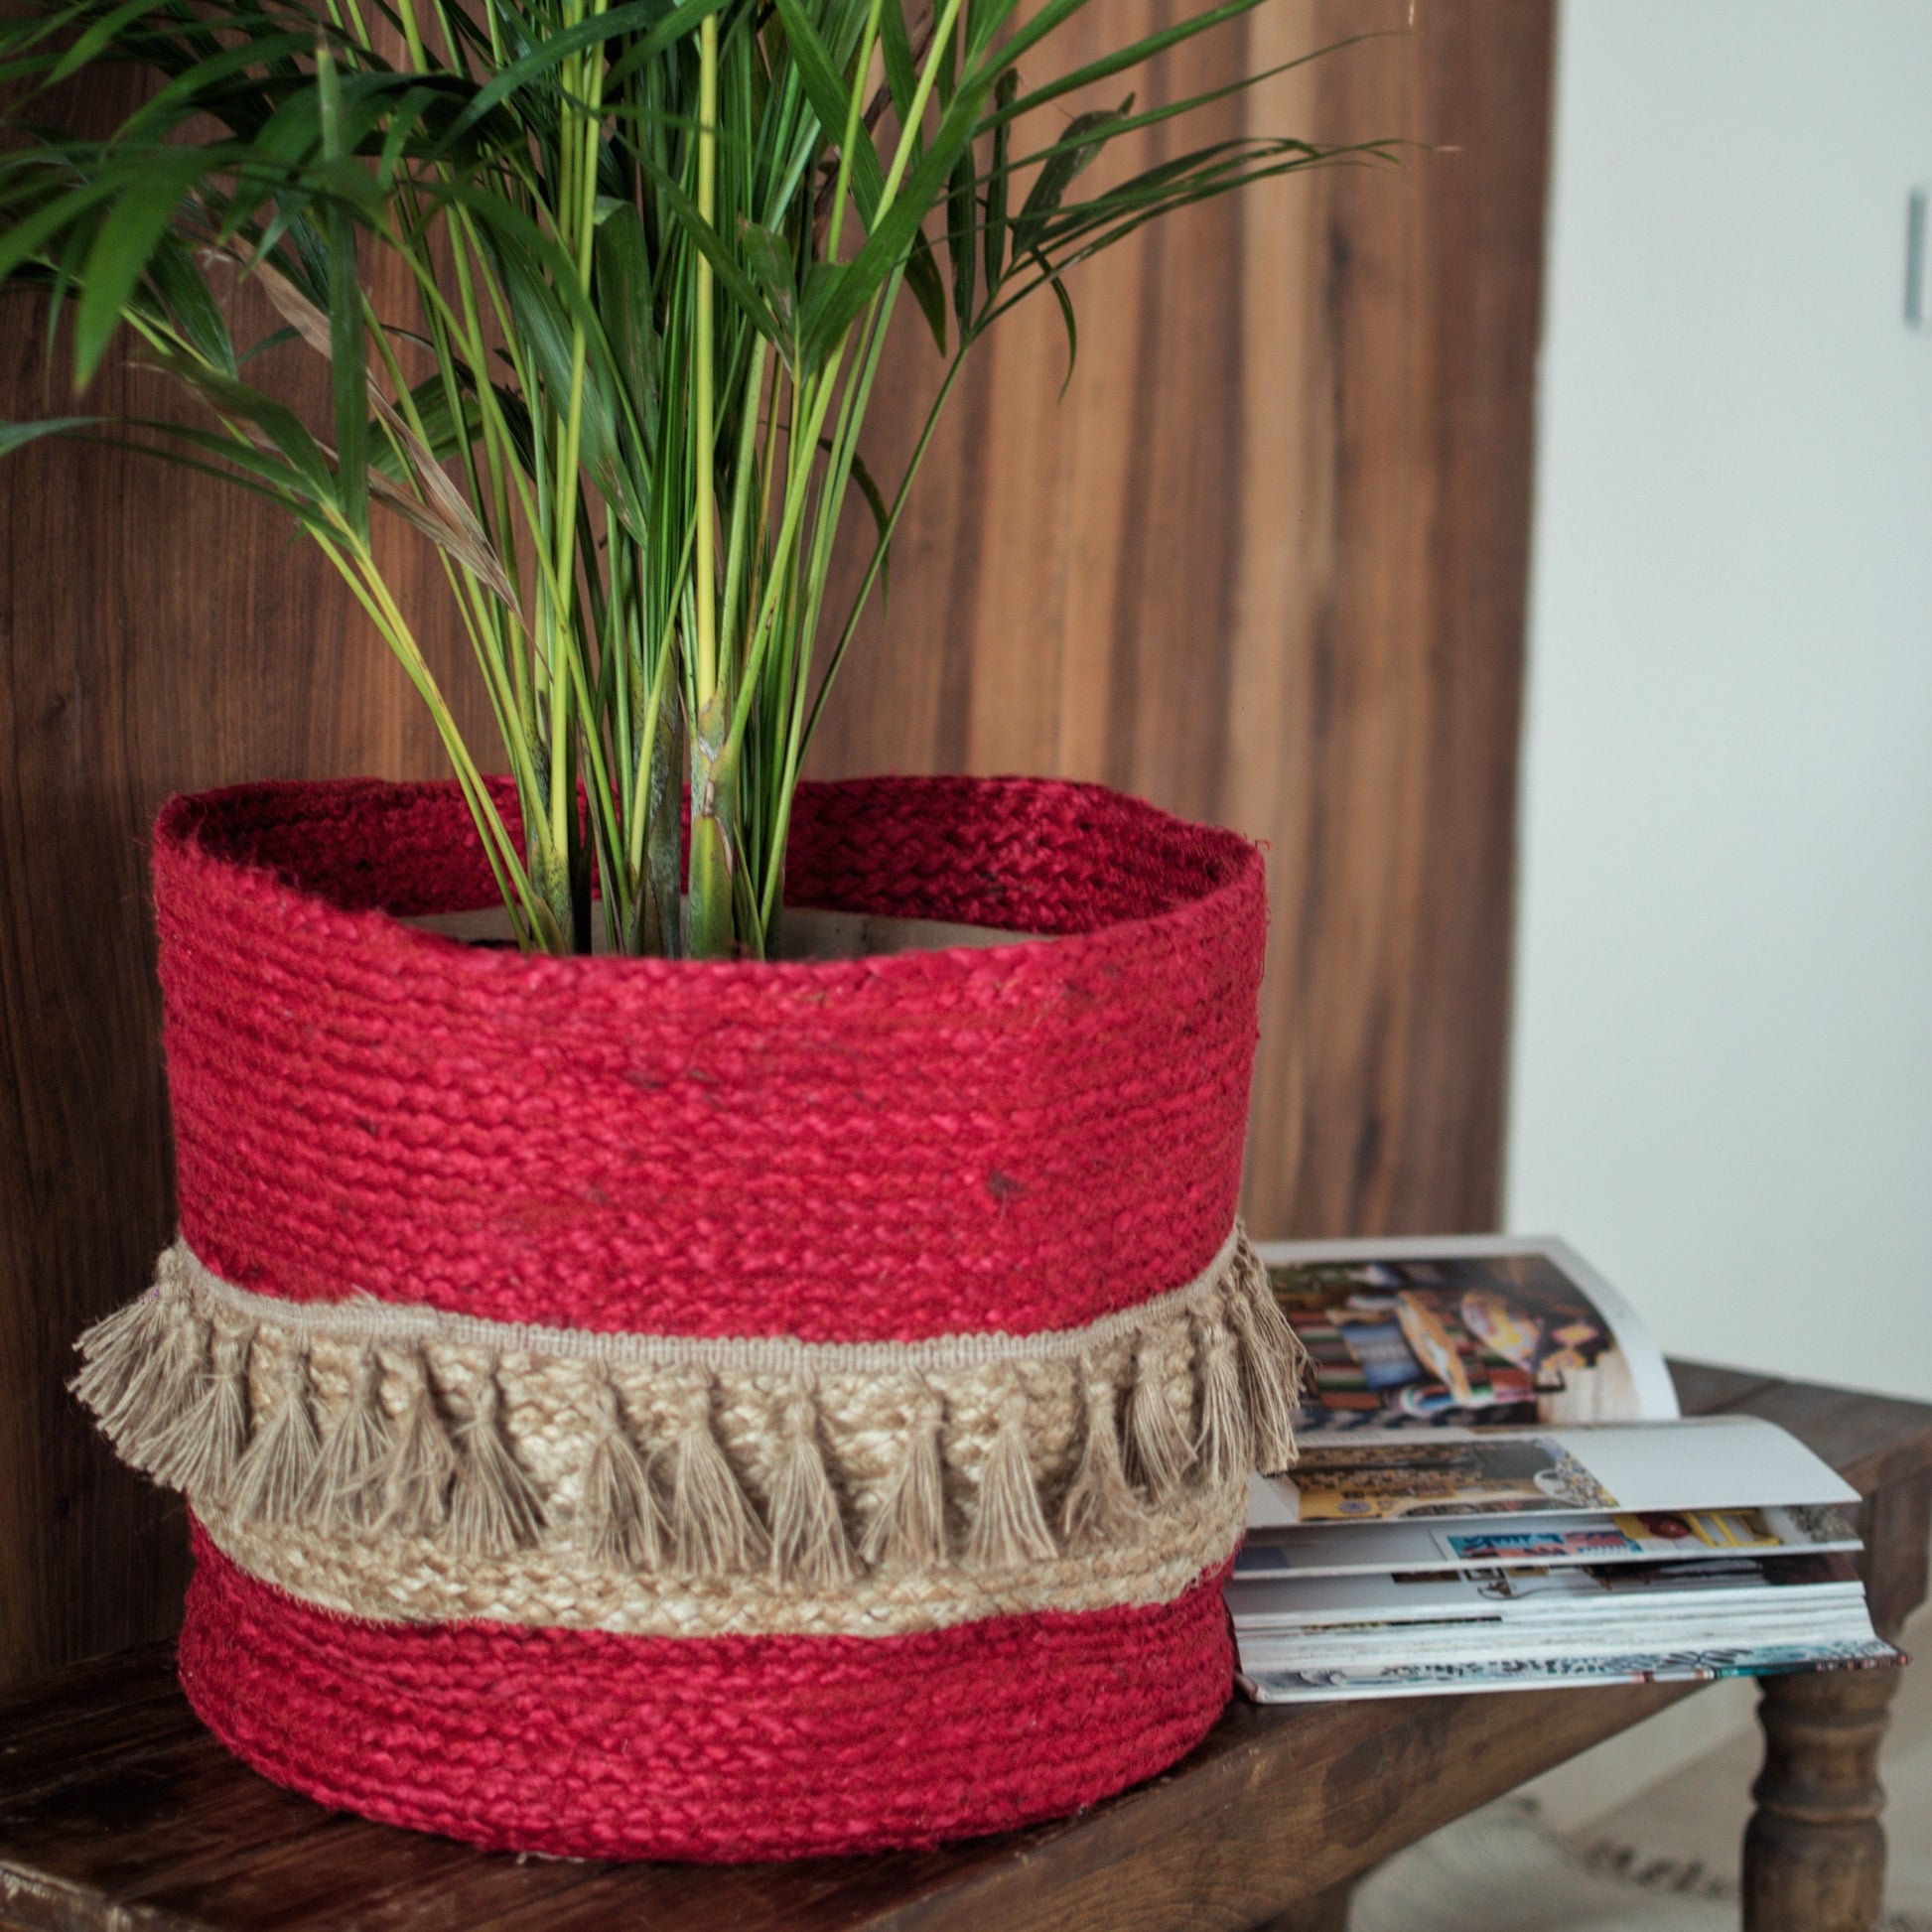 Red tasseled handwoven basket for bohemian homes